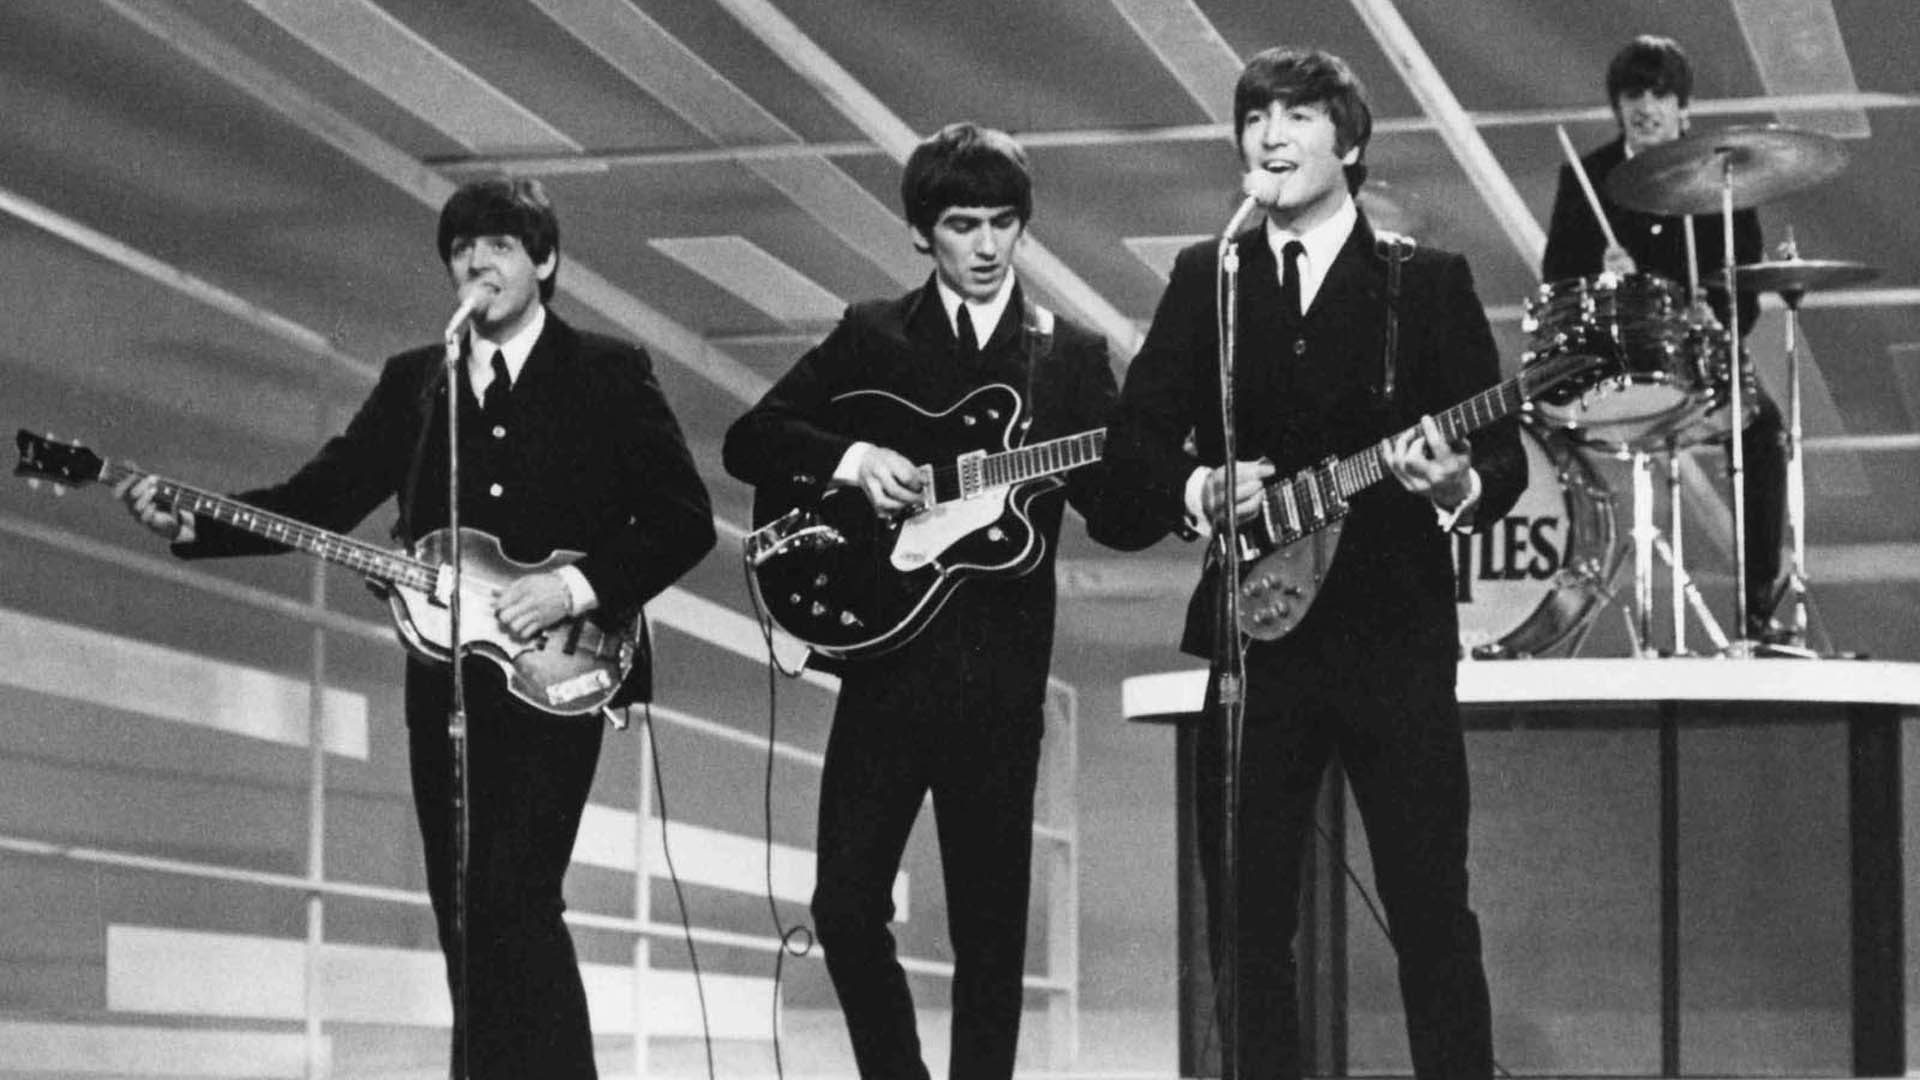 La icónica película "Let It Be" de The Beatles estará disponible en Disney+ después de más de 50 años